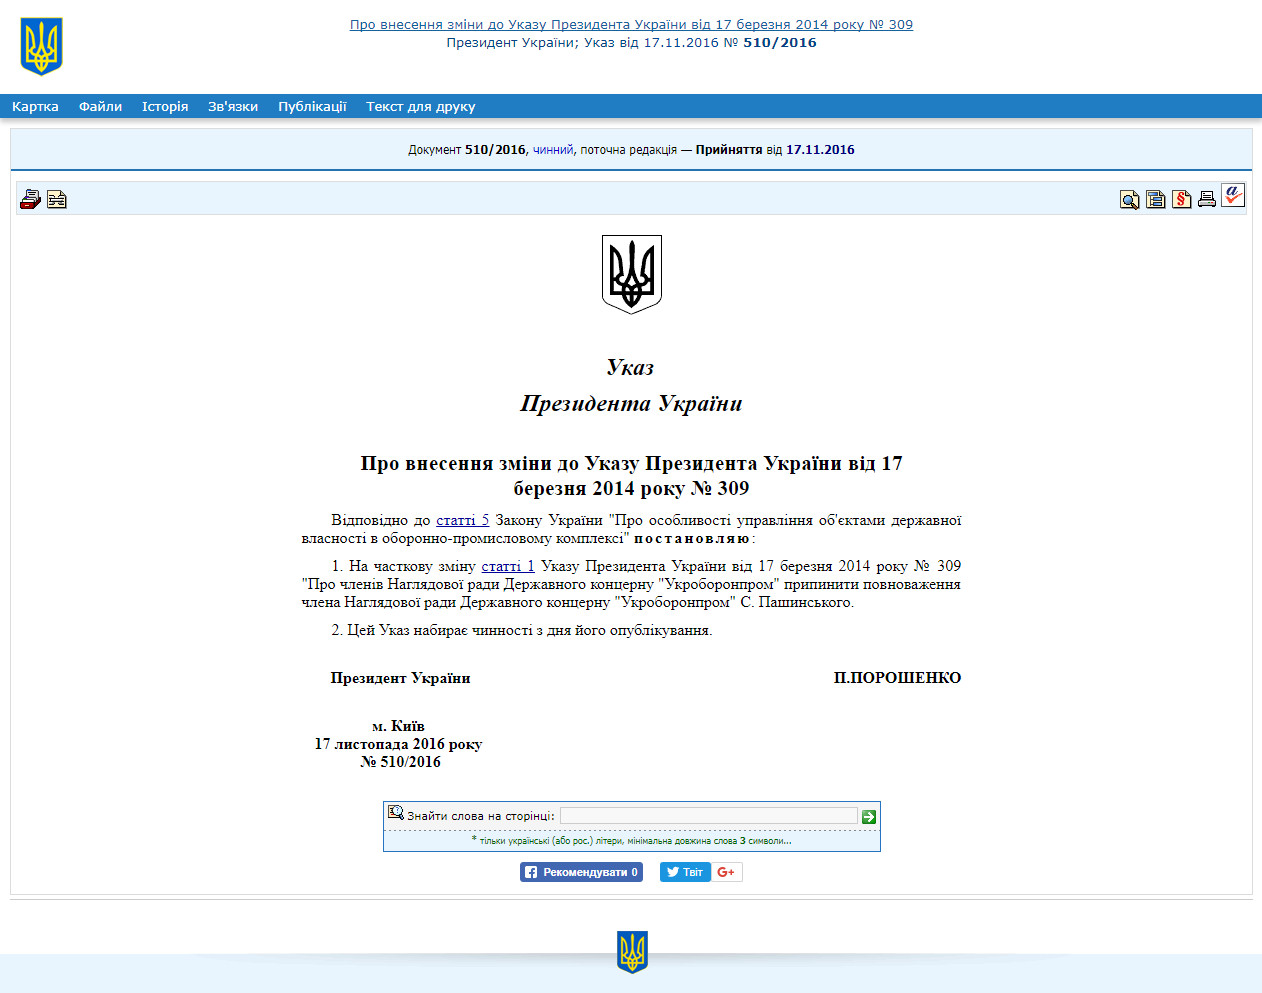 http://zakon5.rada.gov.ua/laws/show/510/2016